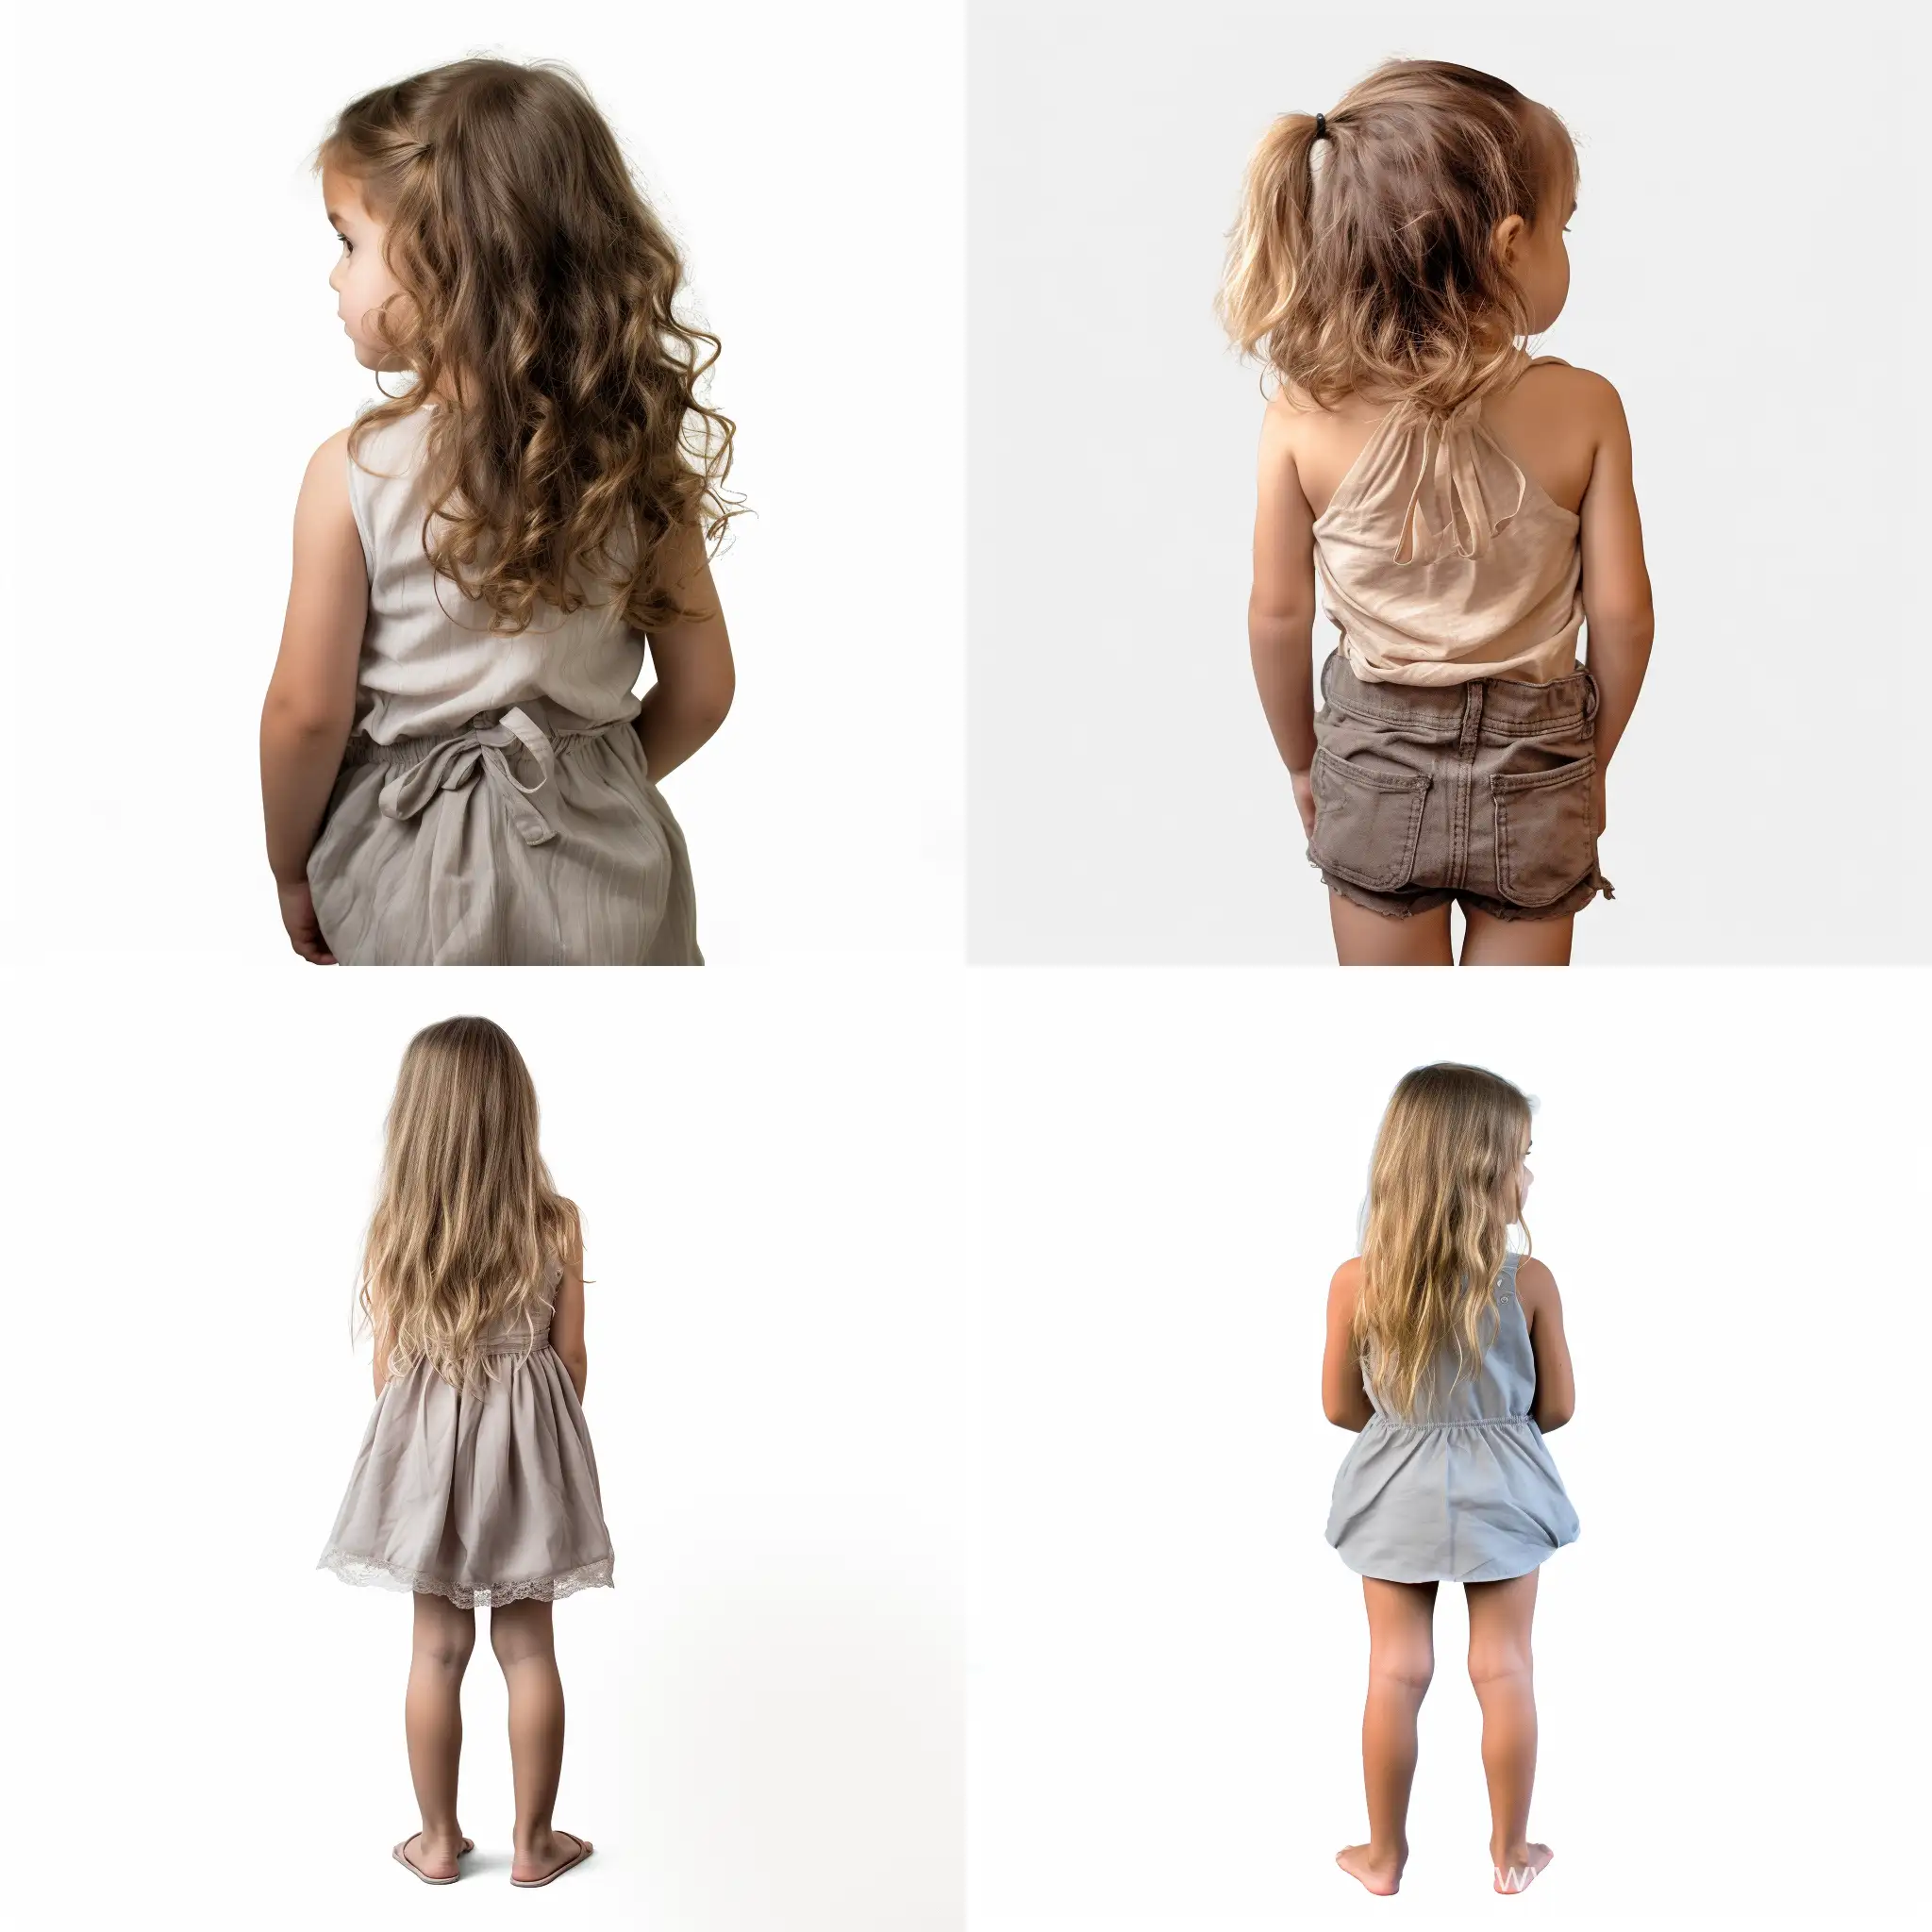 Adorable-Little-Girl-Posing-in-FullBody-Portrait-on-White-Background